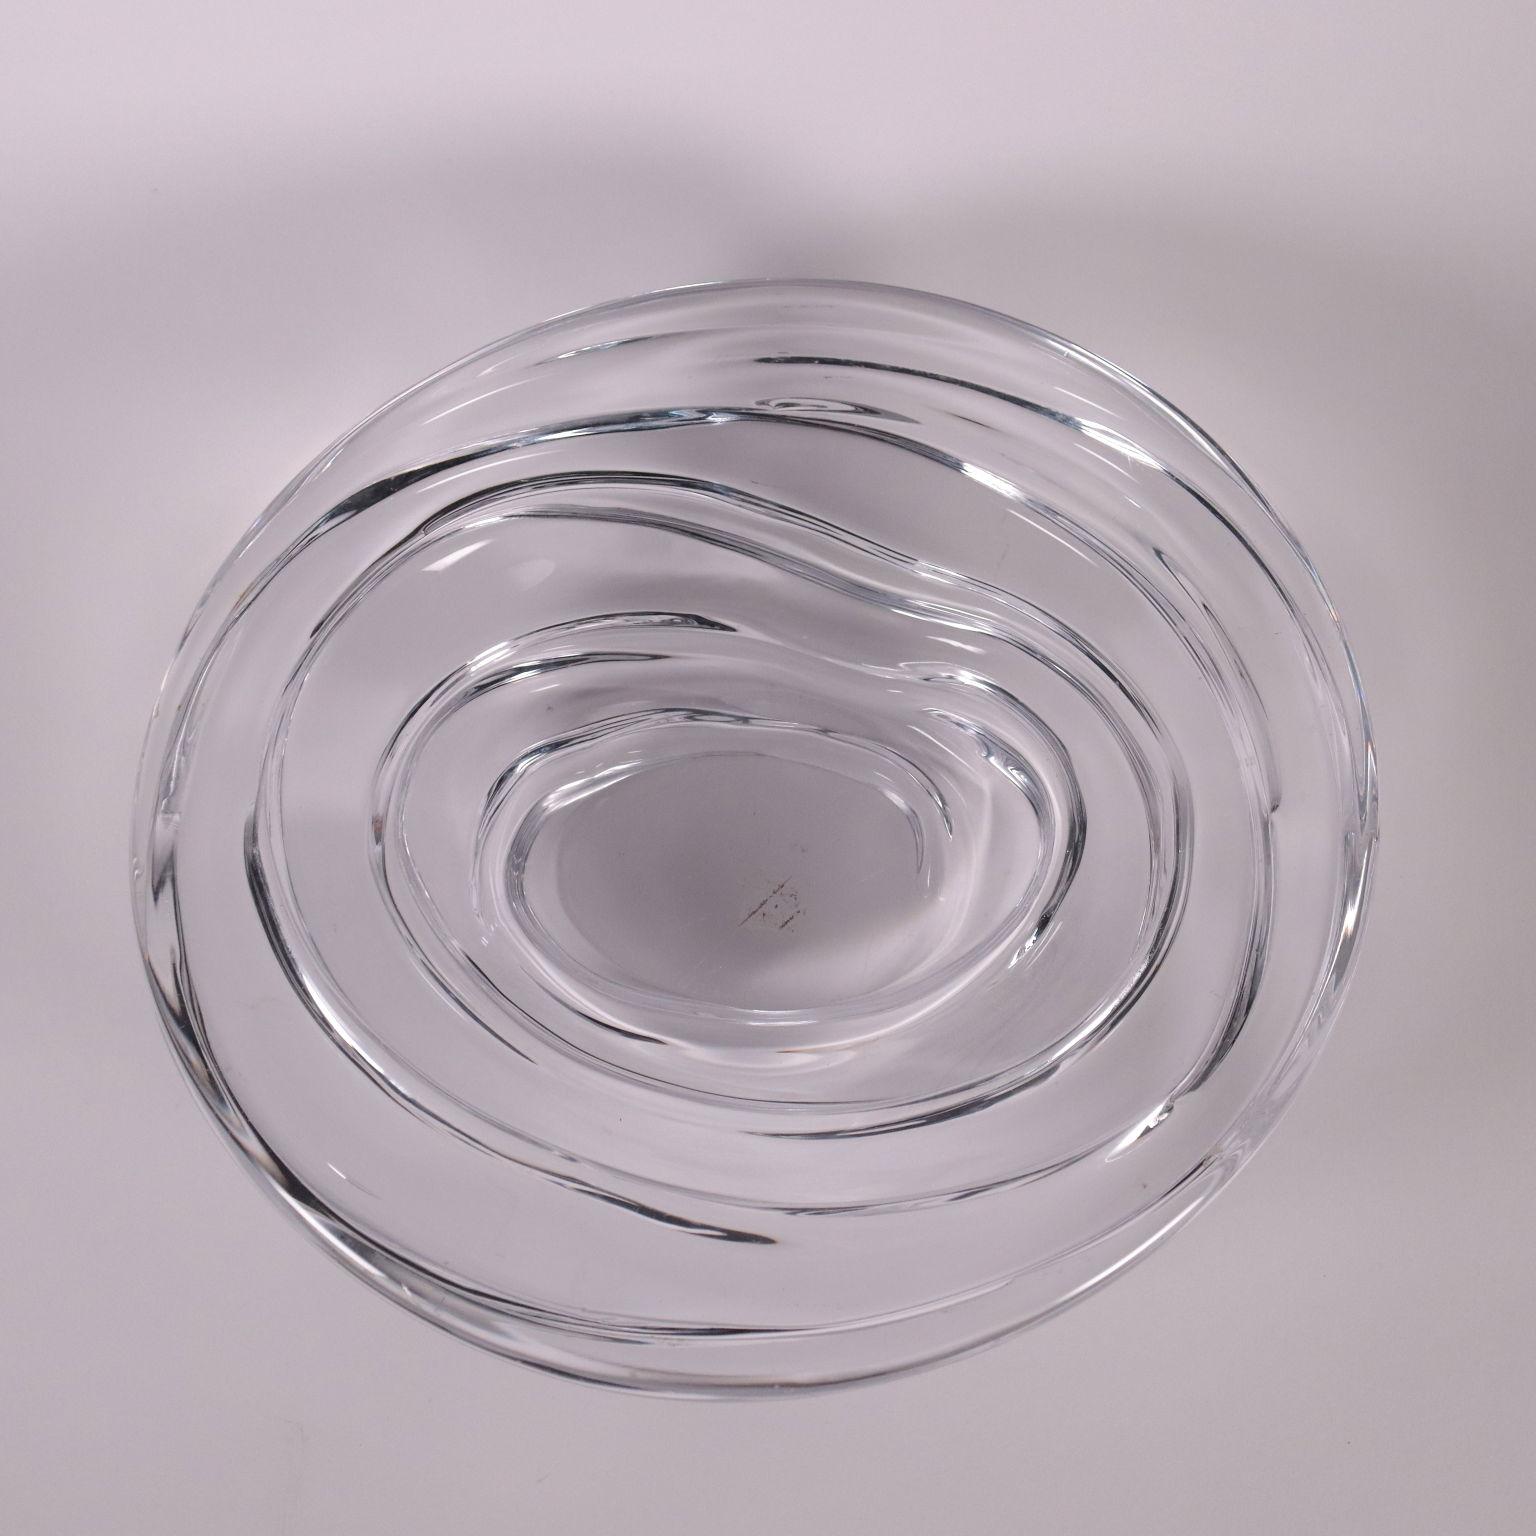 Mid-Century Modern Bowl Glass Italy 1960s-1970s Carlo Moretti Murano Manufacture